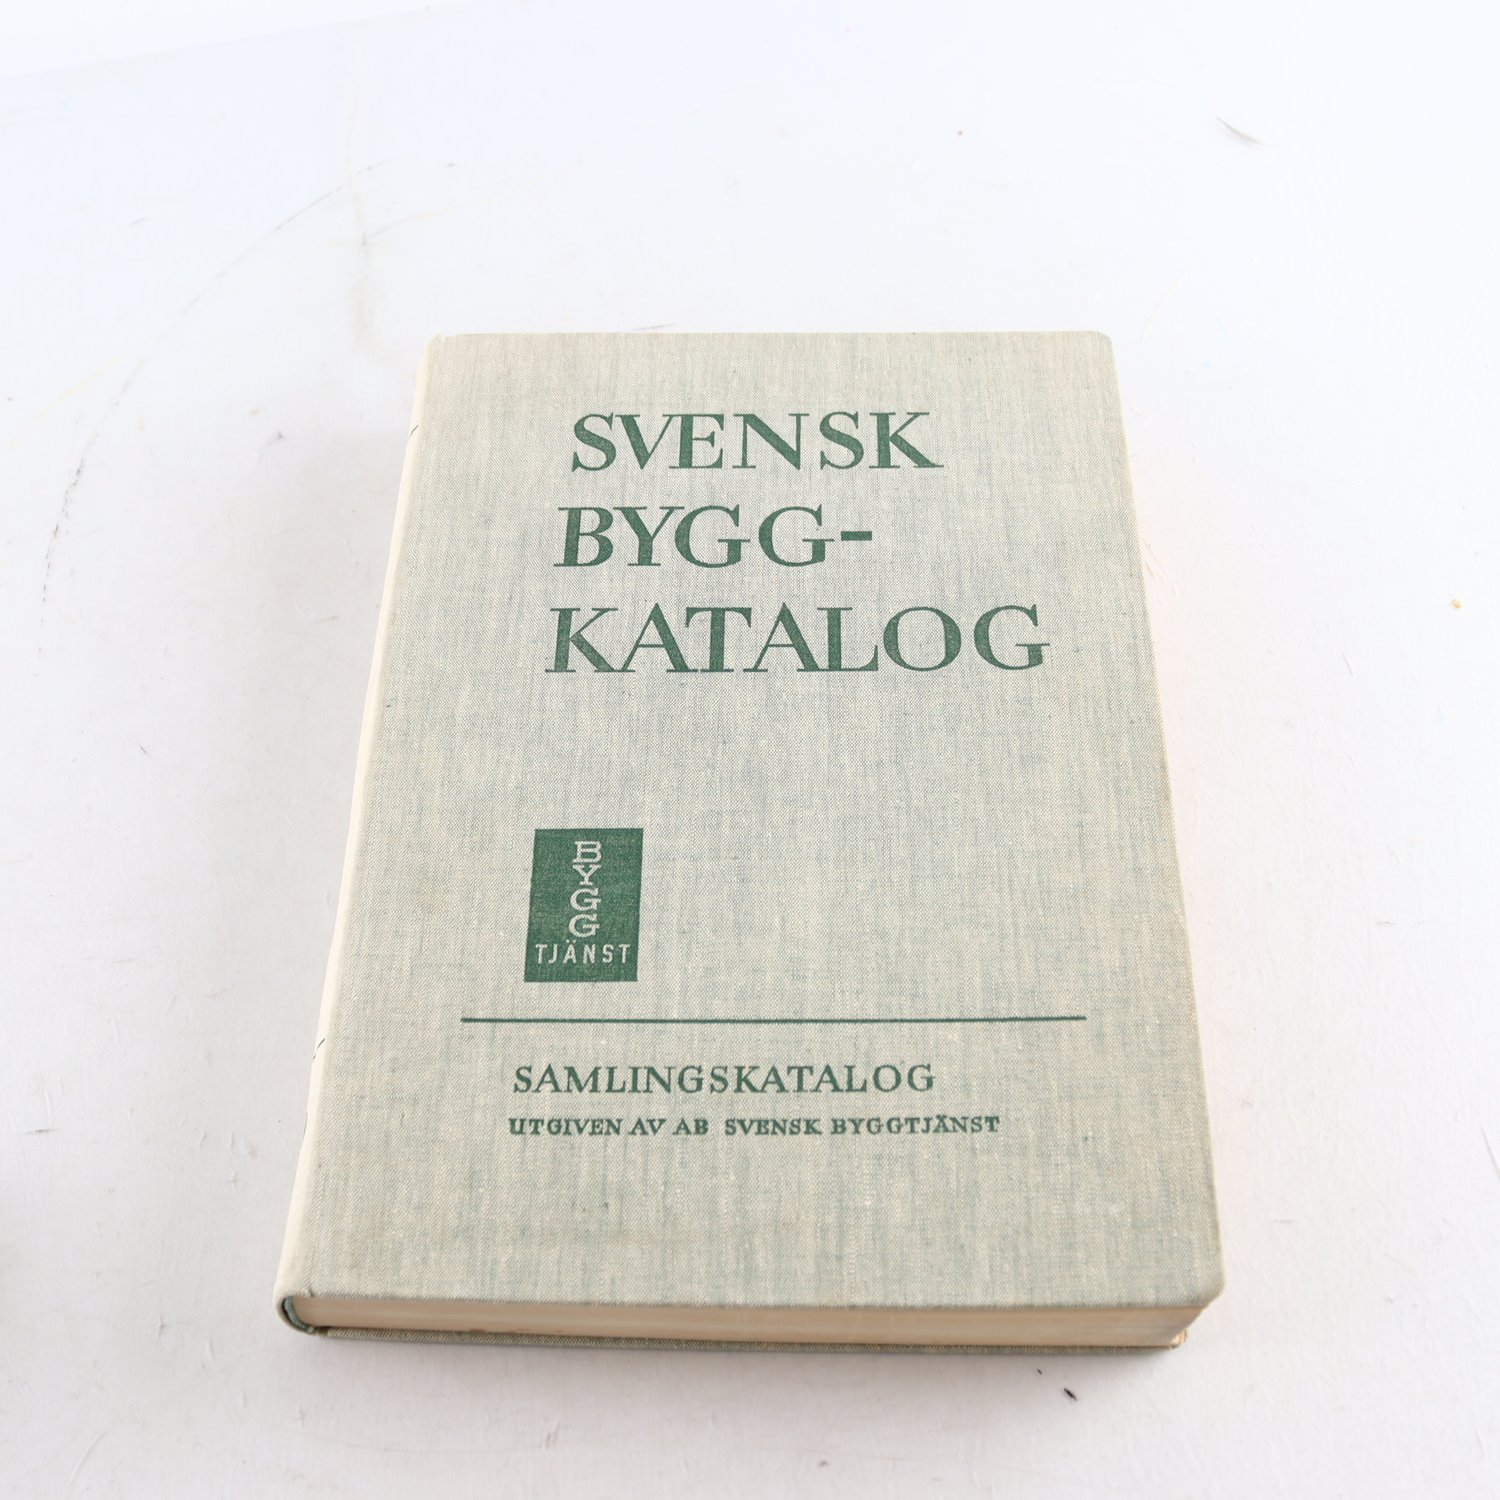 Svensk byggkatalog 1950, Samlingskatalog utg. av Svensk Byggtjänst